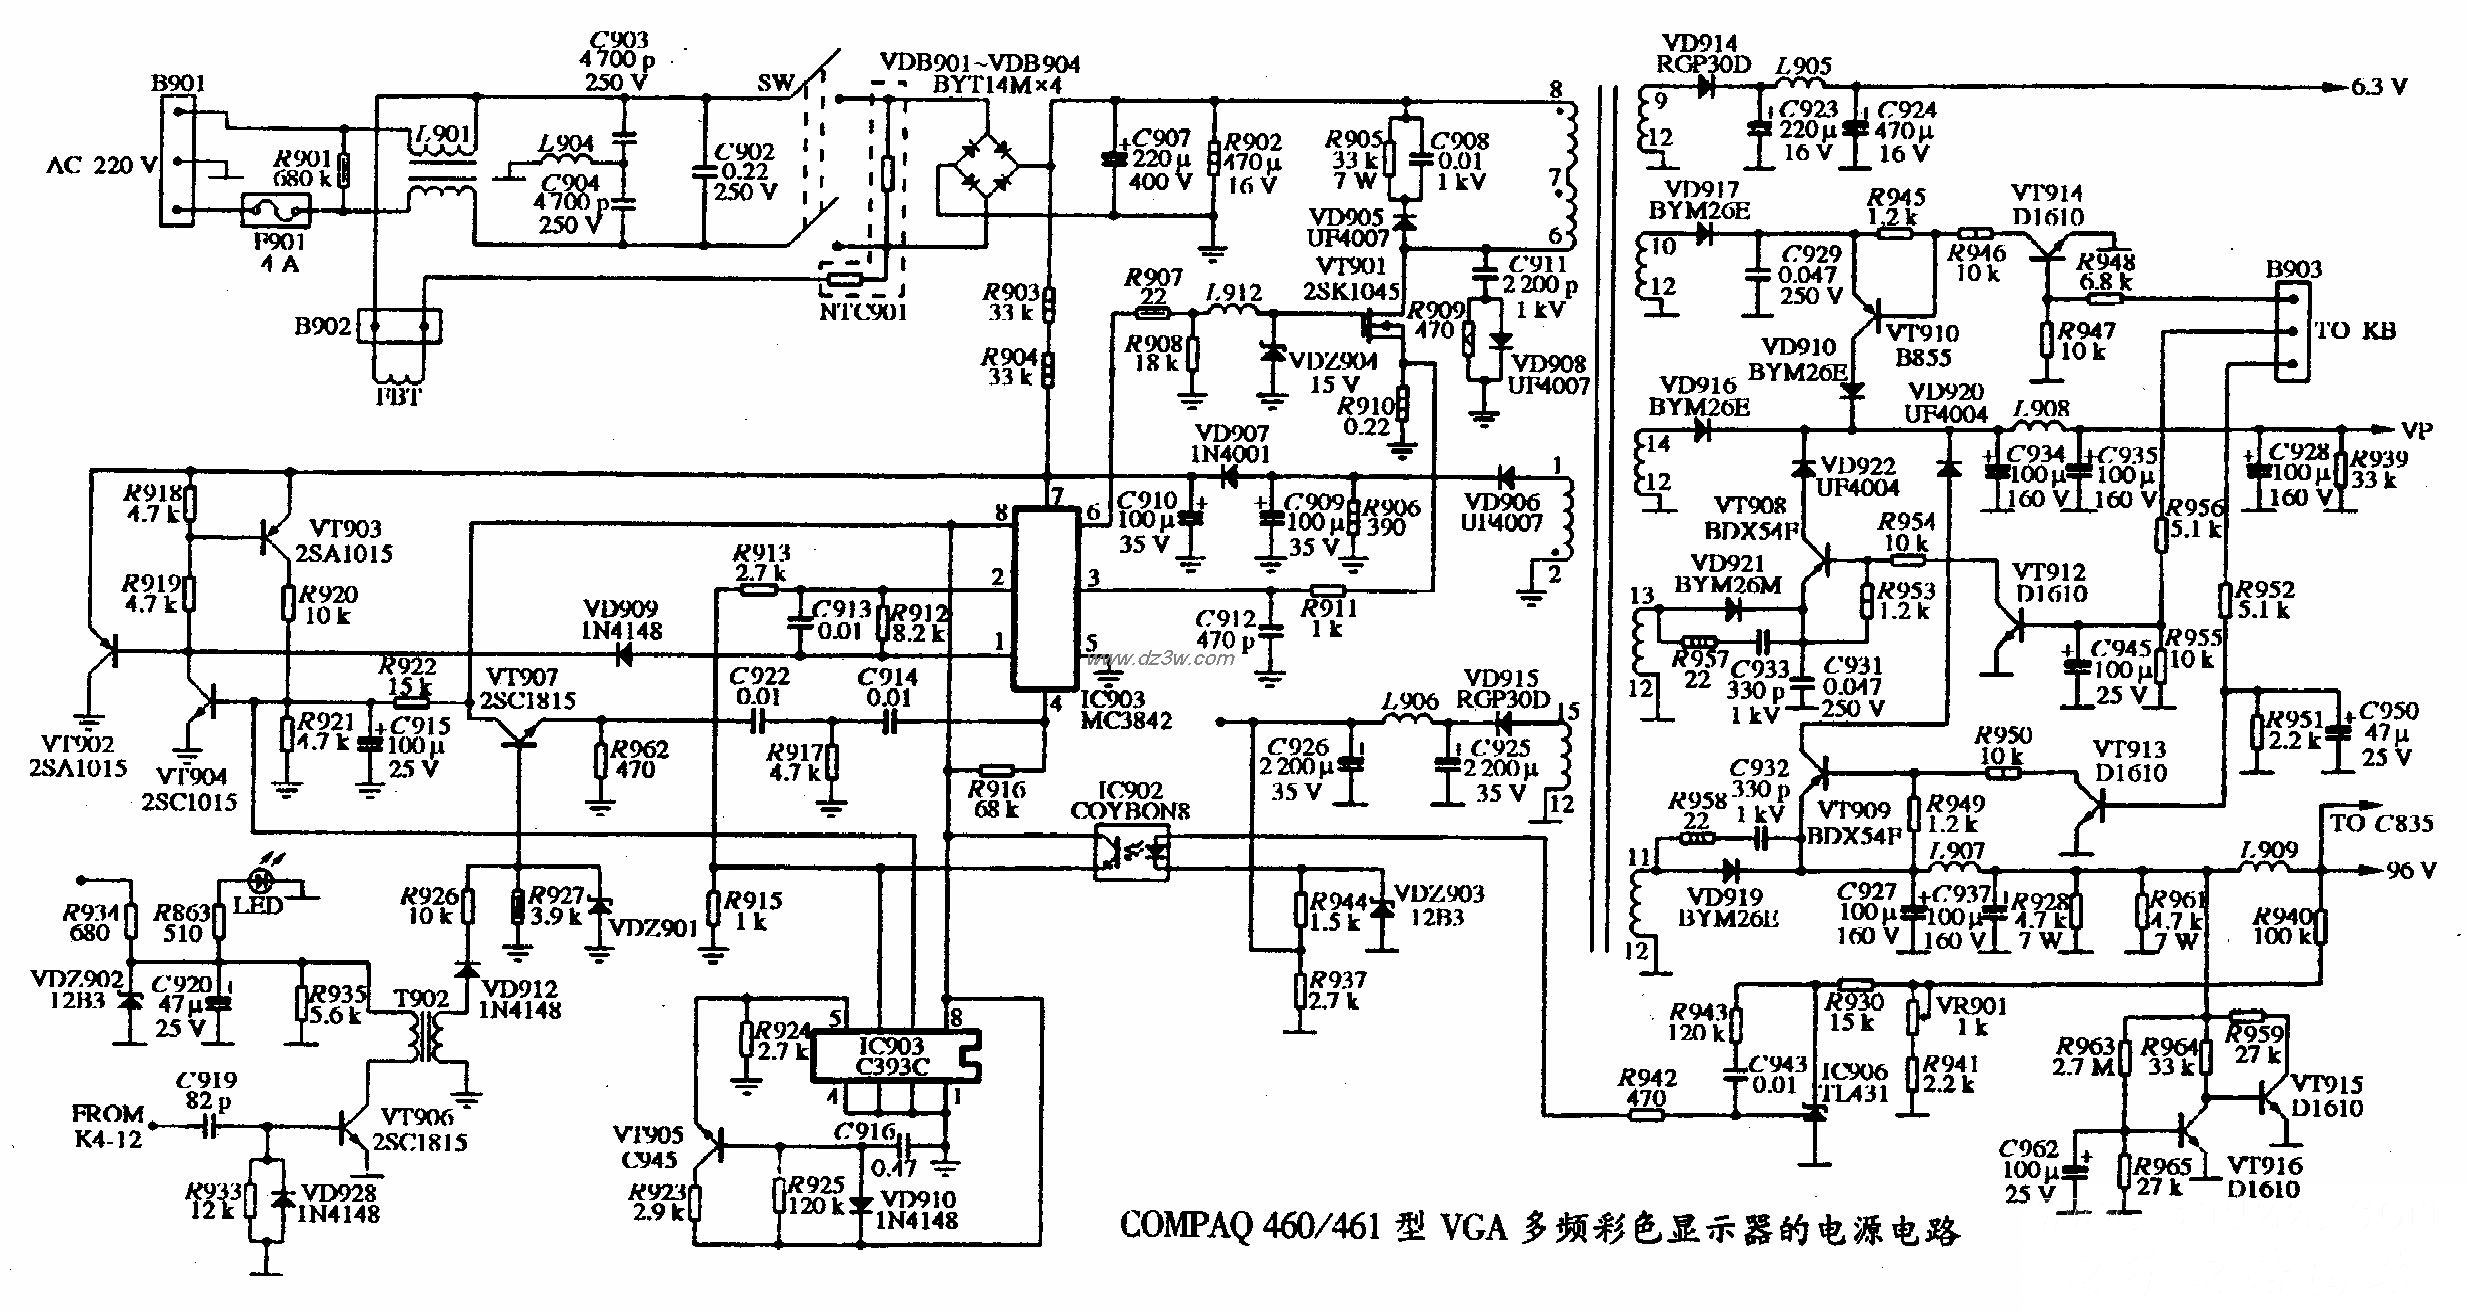 COMPAQ 460/461型VGA多頻彩色顯示器的電源電路圖